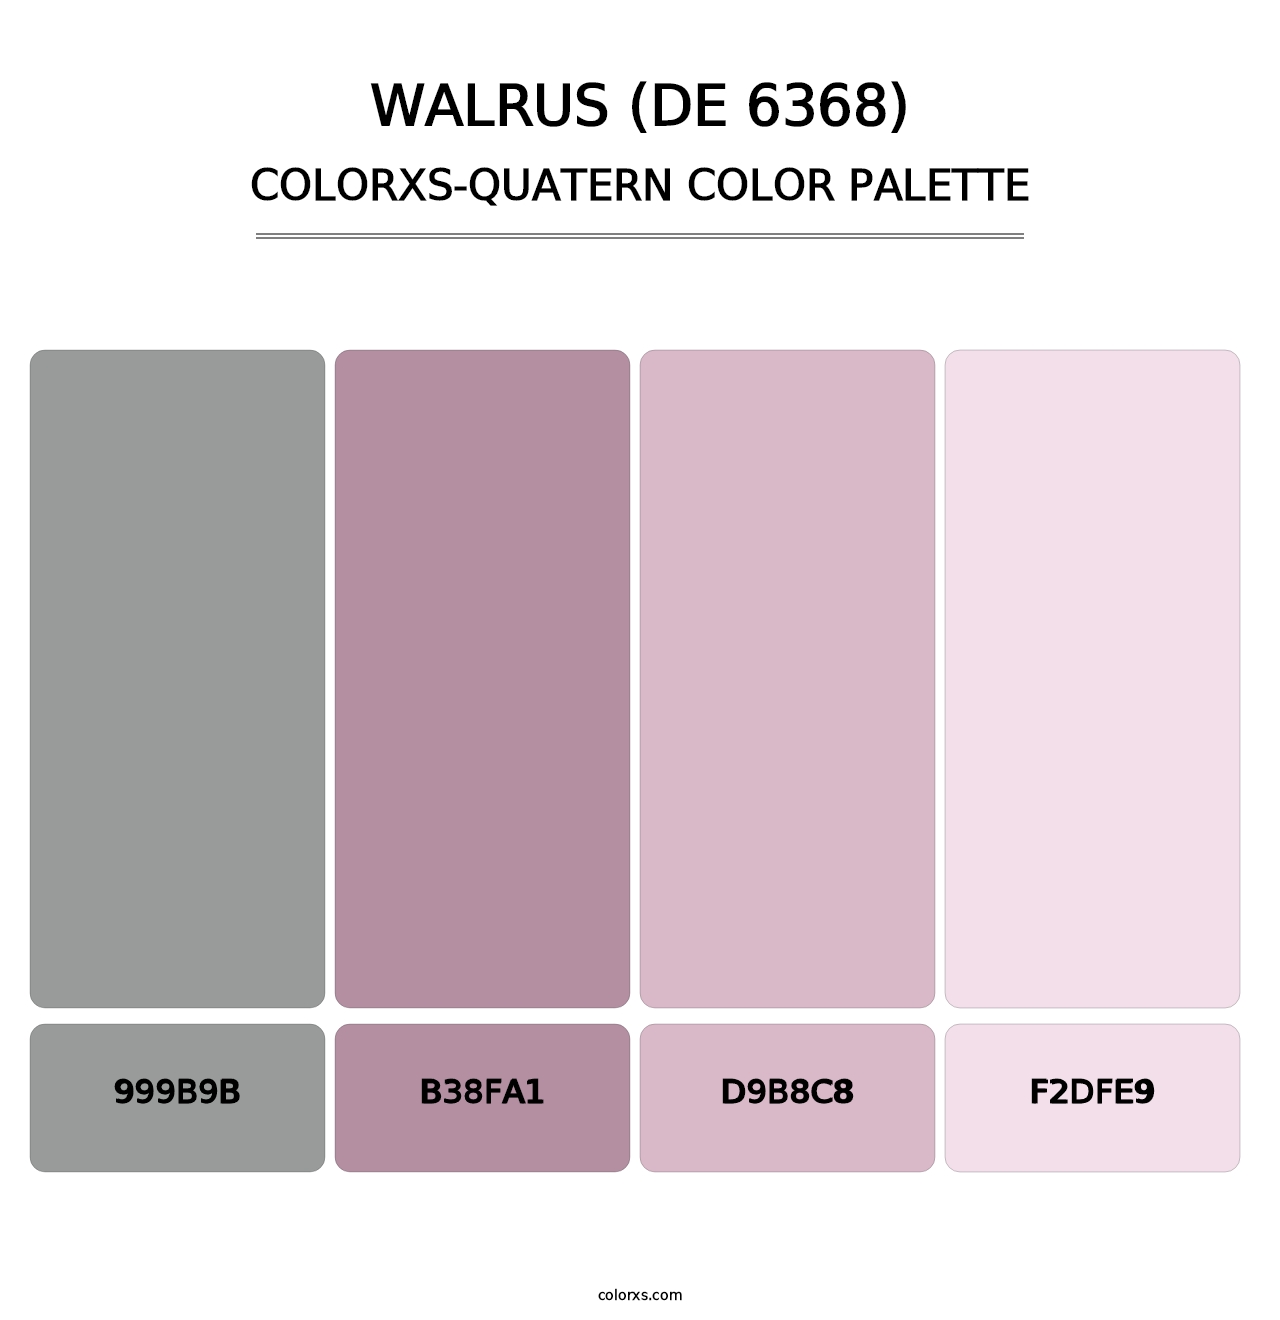 Walrus (DE 6368) - Colorxs Quatern Palette